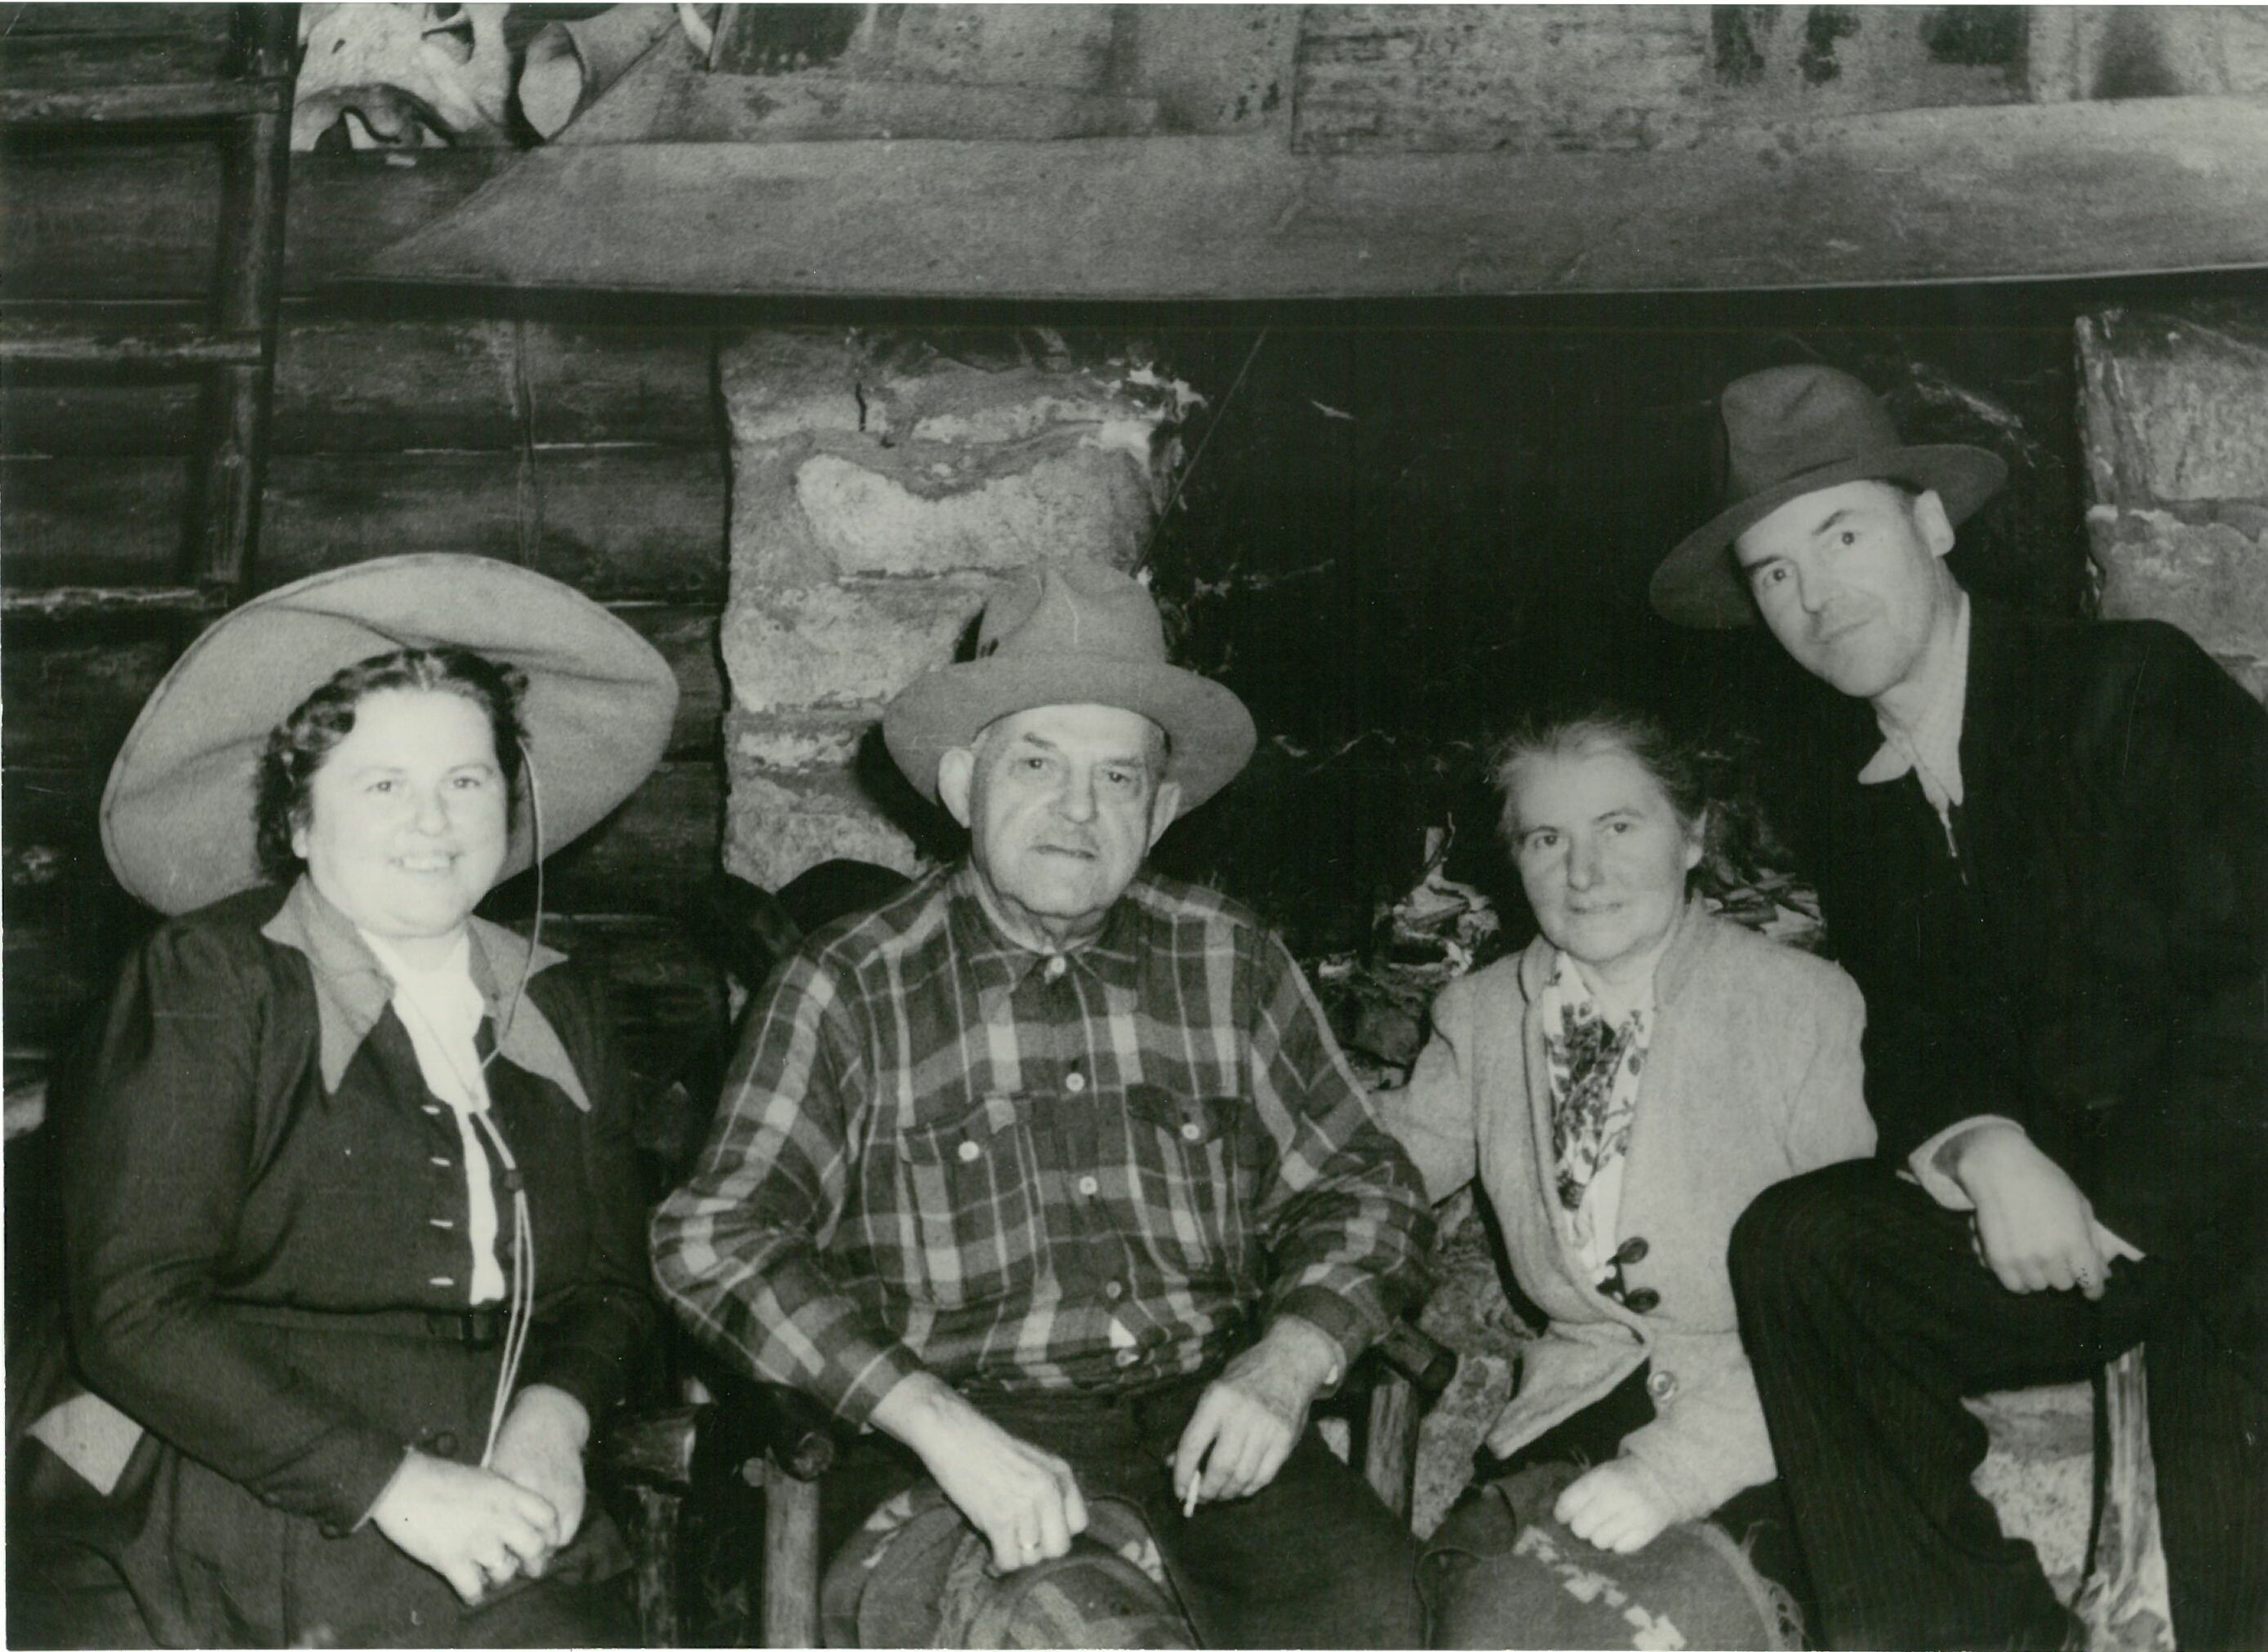 Patty Frank mit Frau Marie Tobis und Freunden vor Kamin im Kaminraum (Karl-May-Museum gGmbH RR-R)